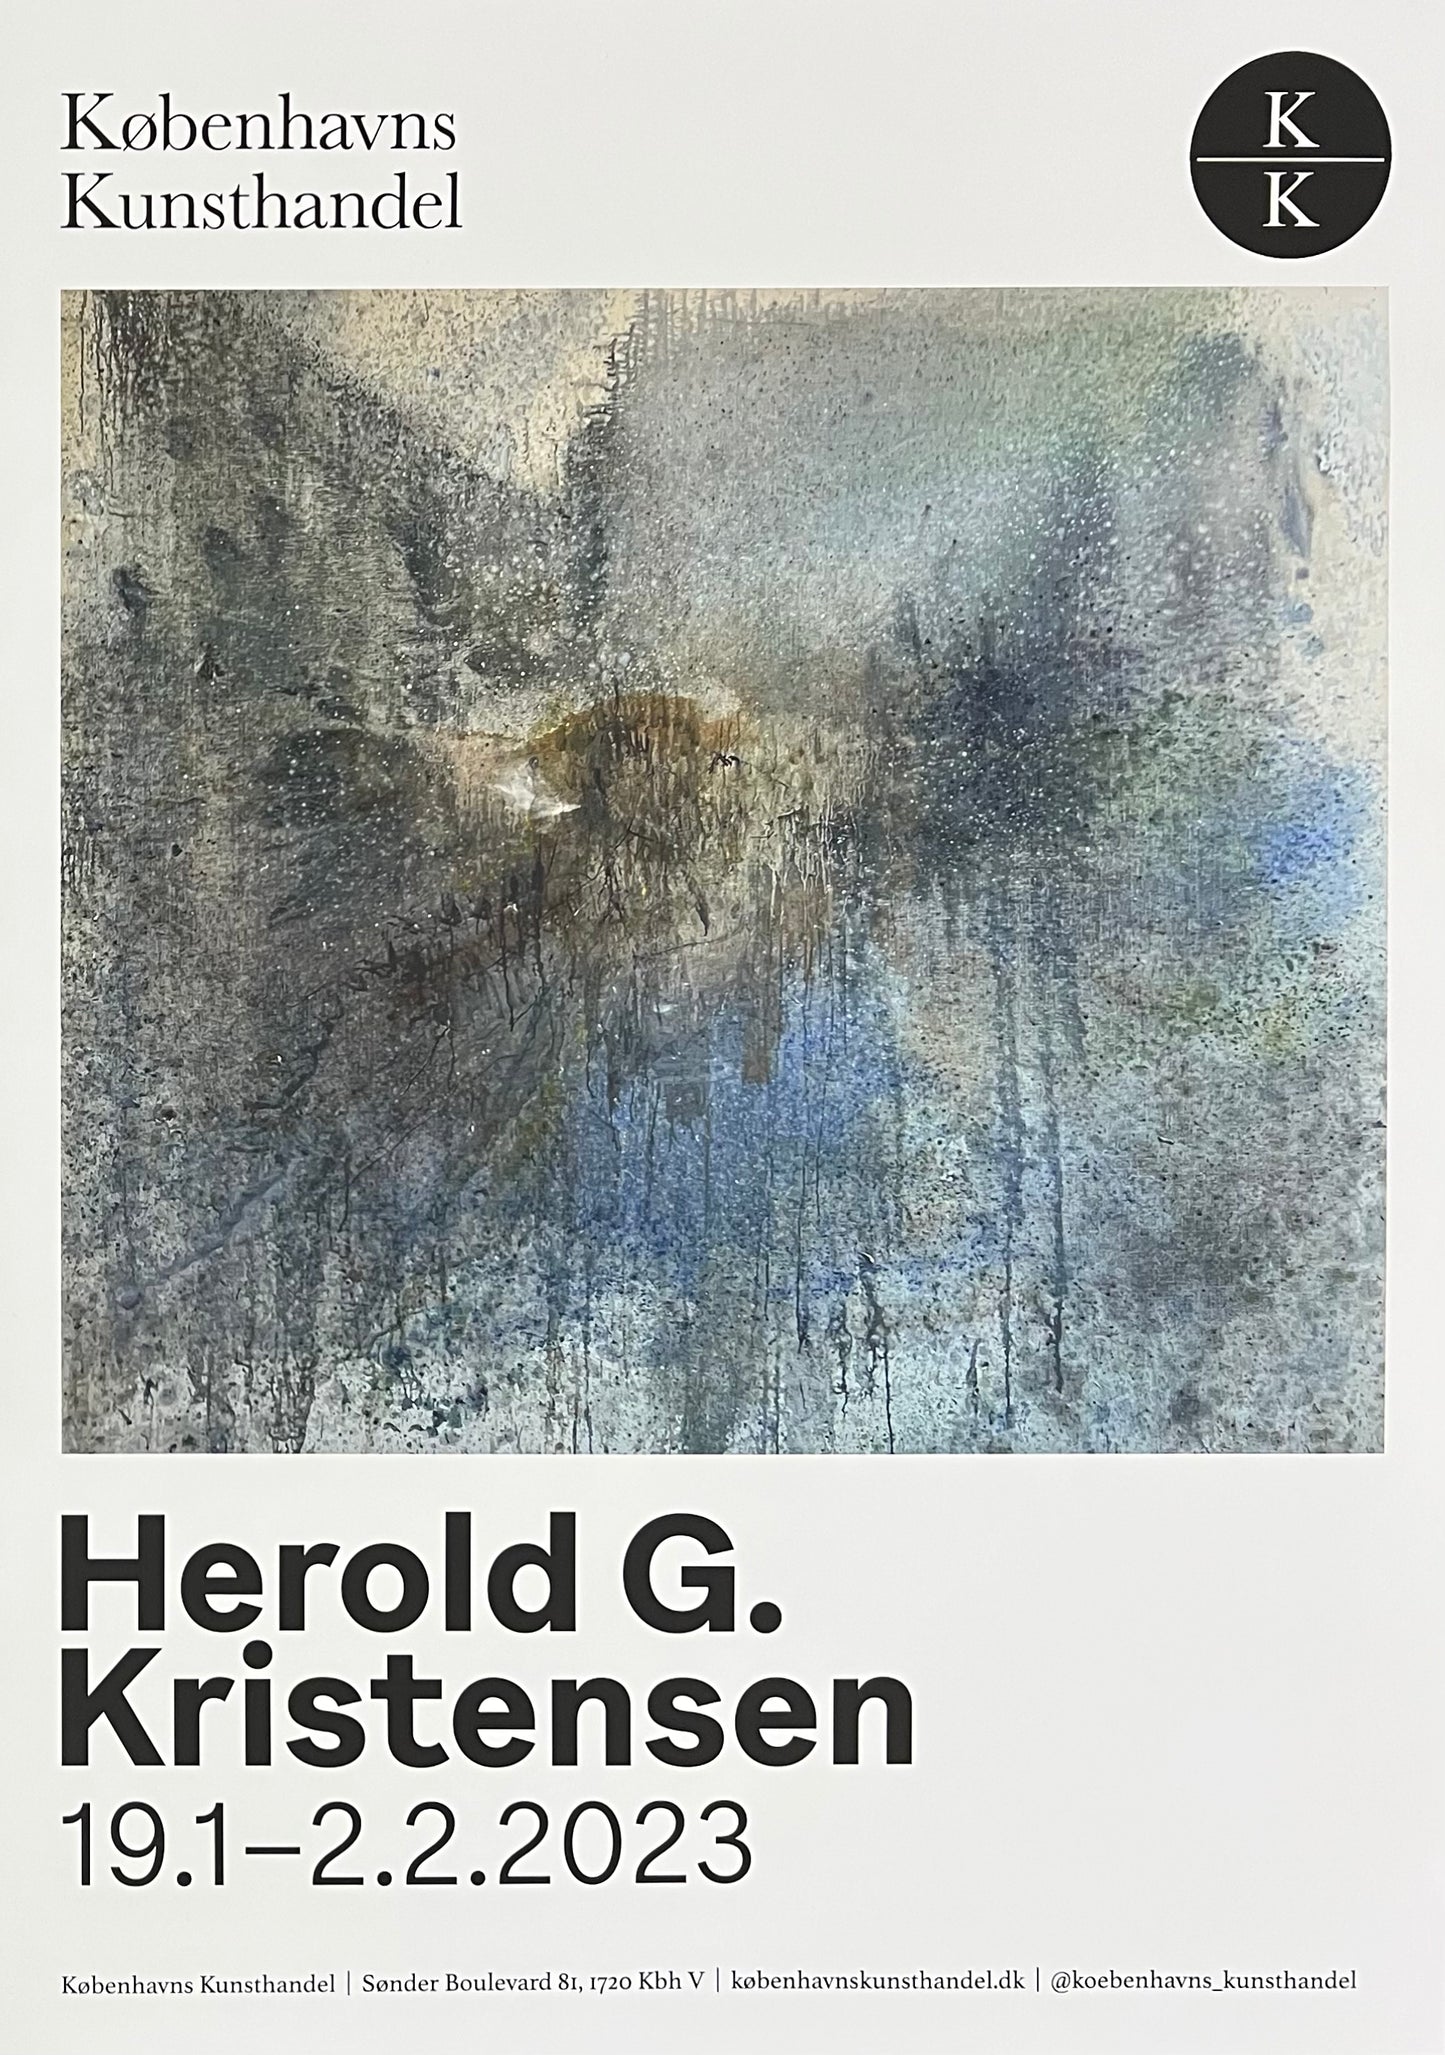 Herold G. Kristensen. Exhibtion poster, 2023